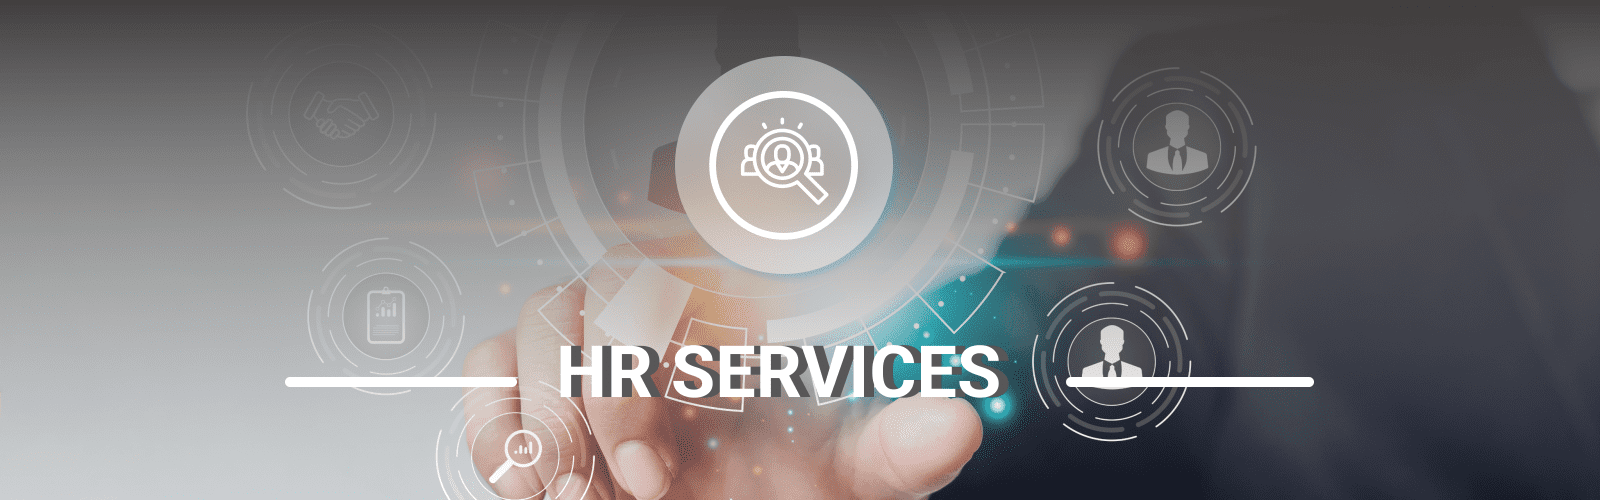 HR SERVICES